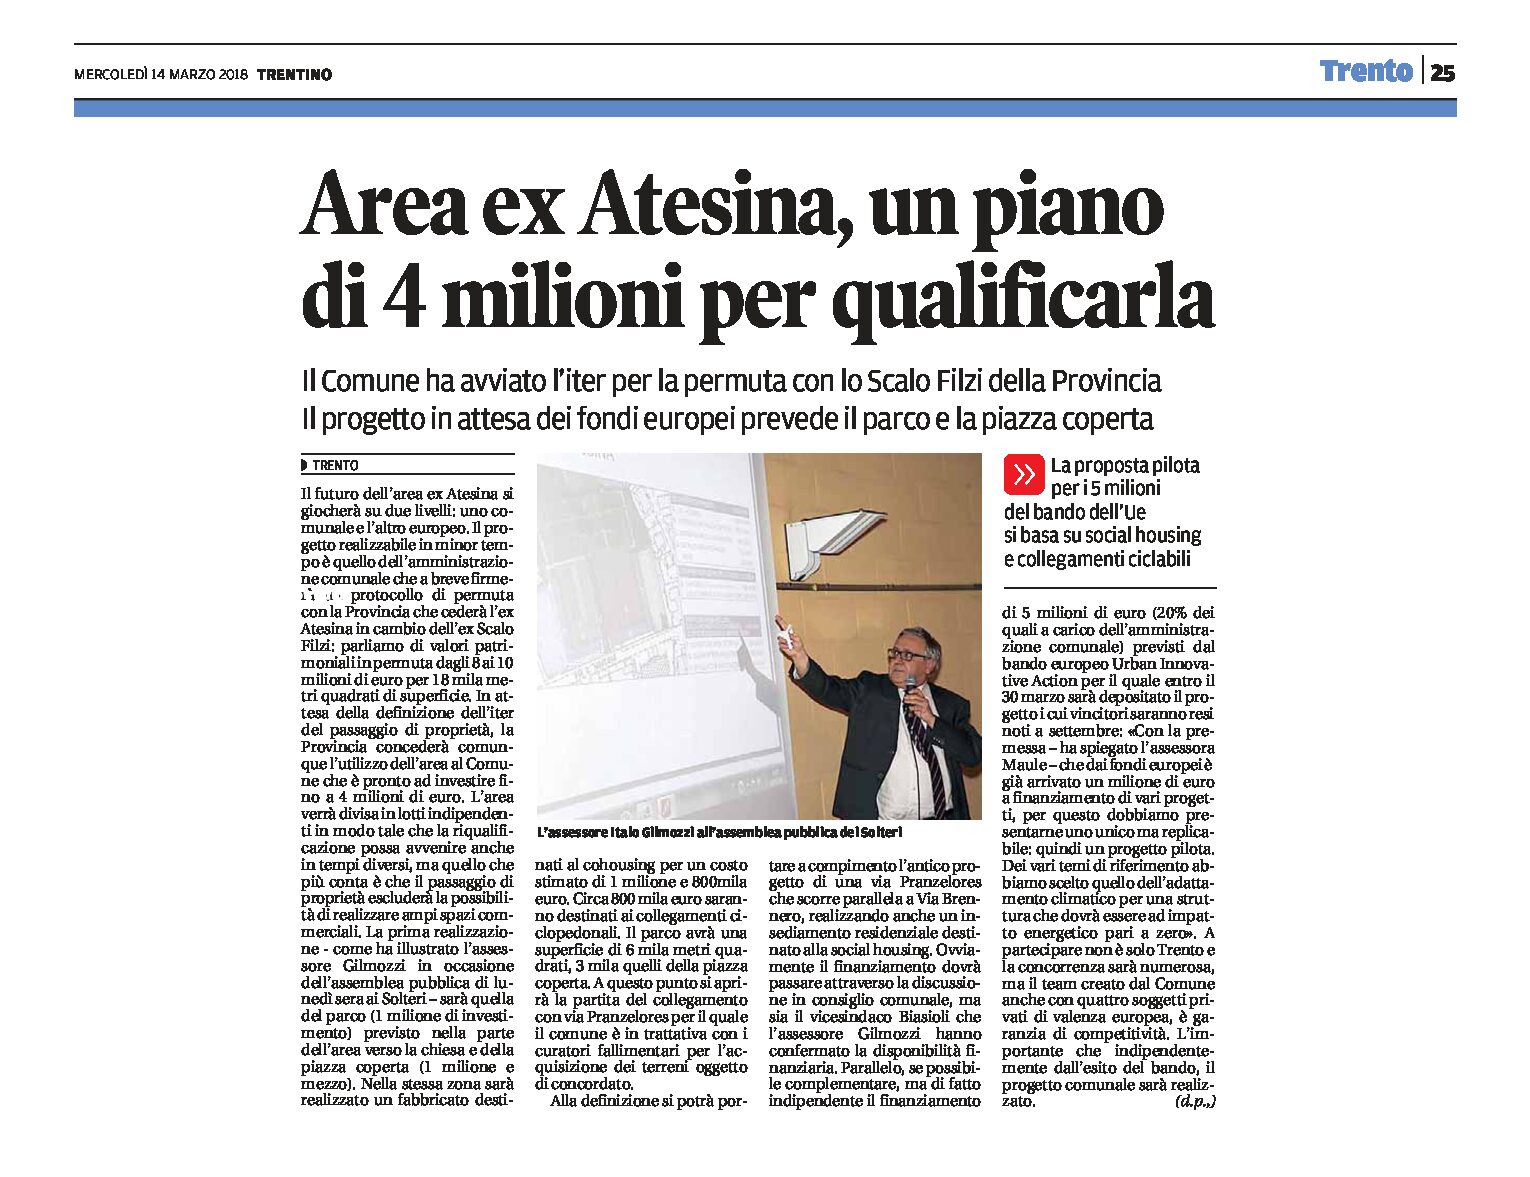 Trento, area ex Atesina: un piano di 4 milioni per qualificarla